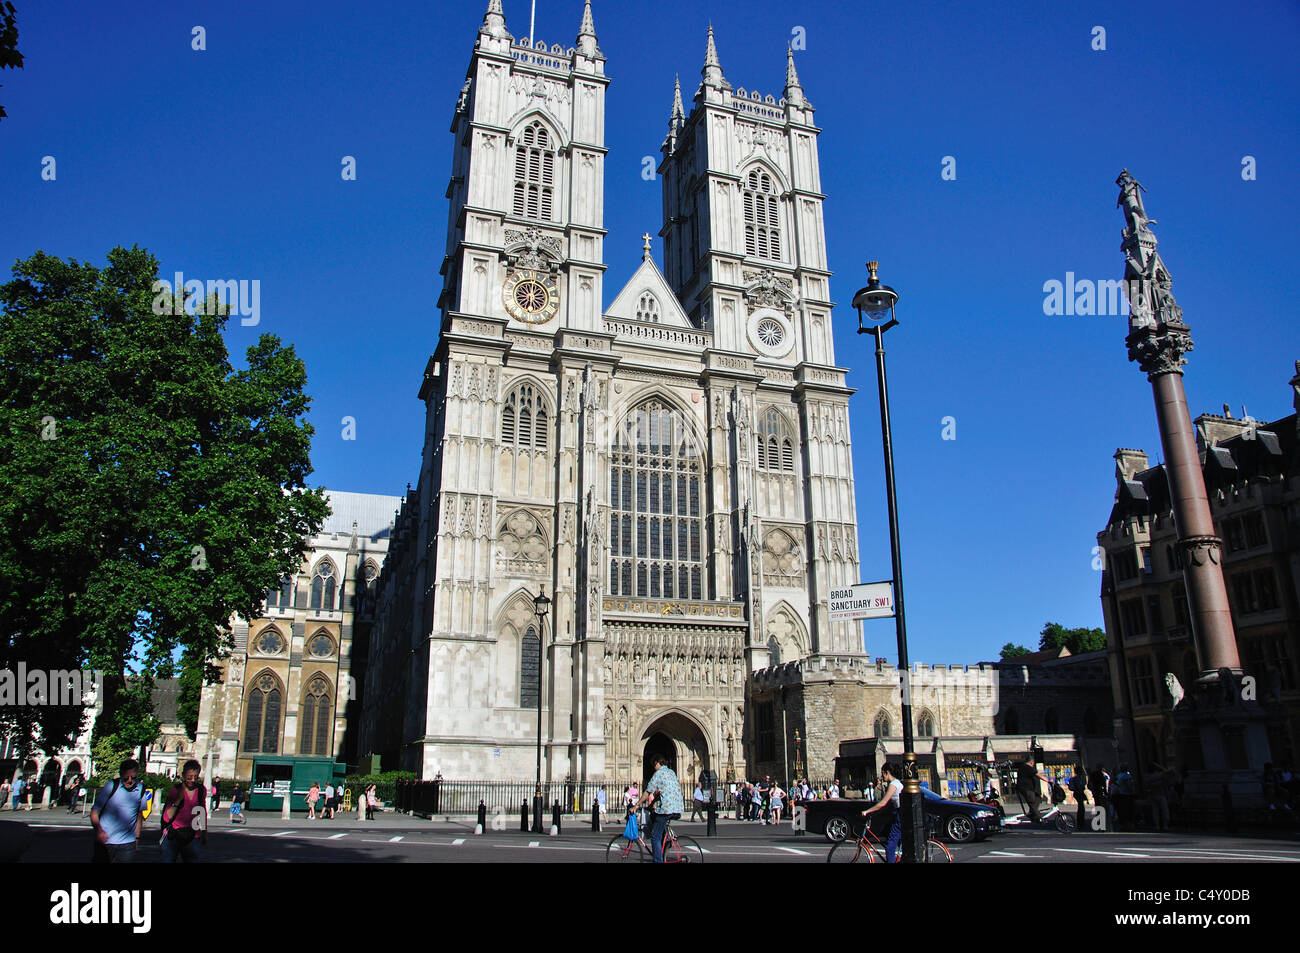 La gran puerta occidental de la Abadía de Westminster, Westminster, la ciudad de Westminster, Greater London, England, Reino Unido Foto de stock